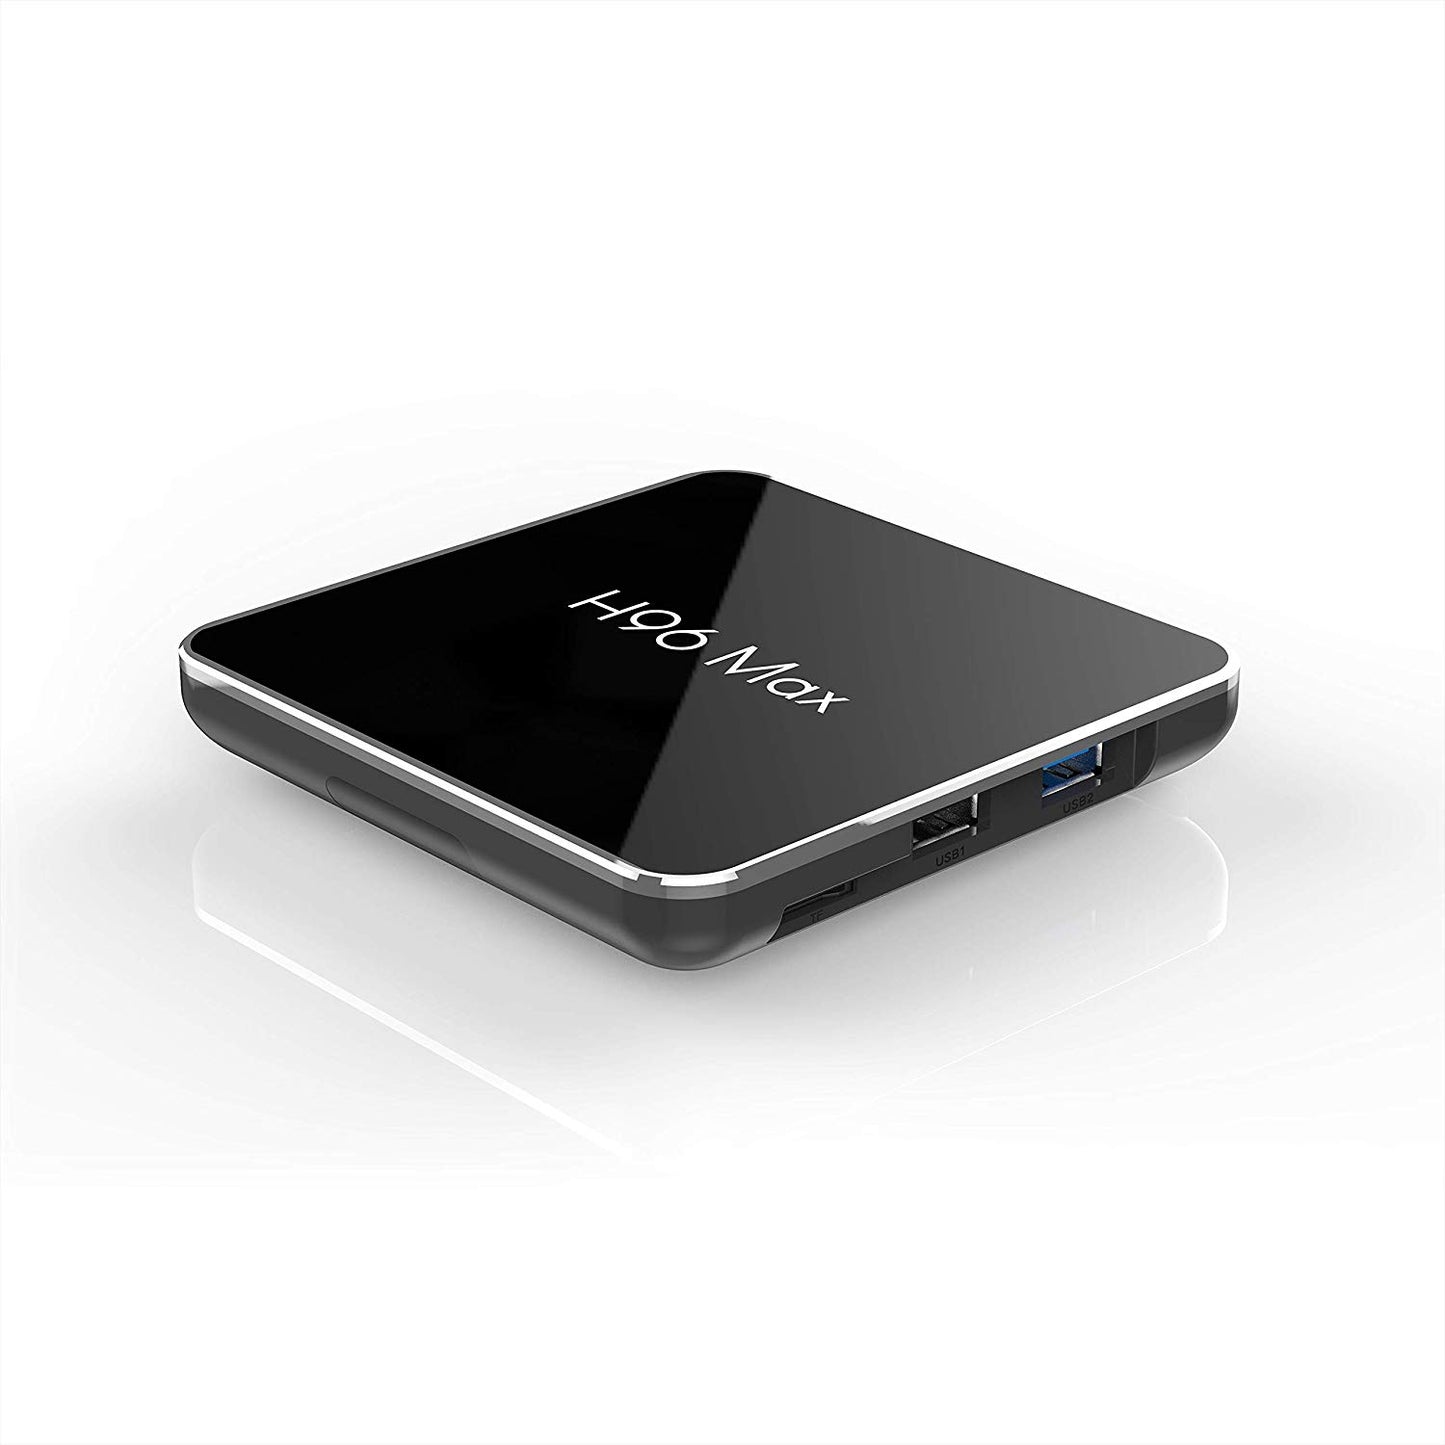 H96 Max X2 S905X2 4GB DDR4 RAM 64GB ROM 4K Android 8.1 5G WiFi USB3.0 TV Box Voice Command Remote Control